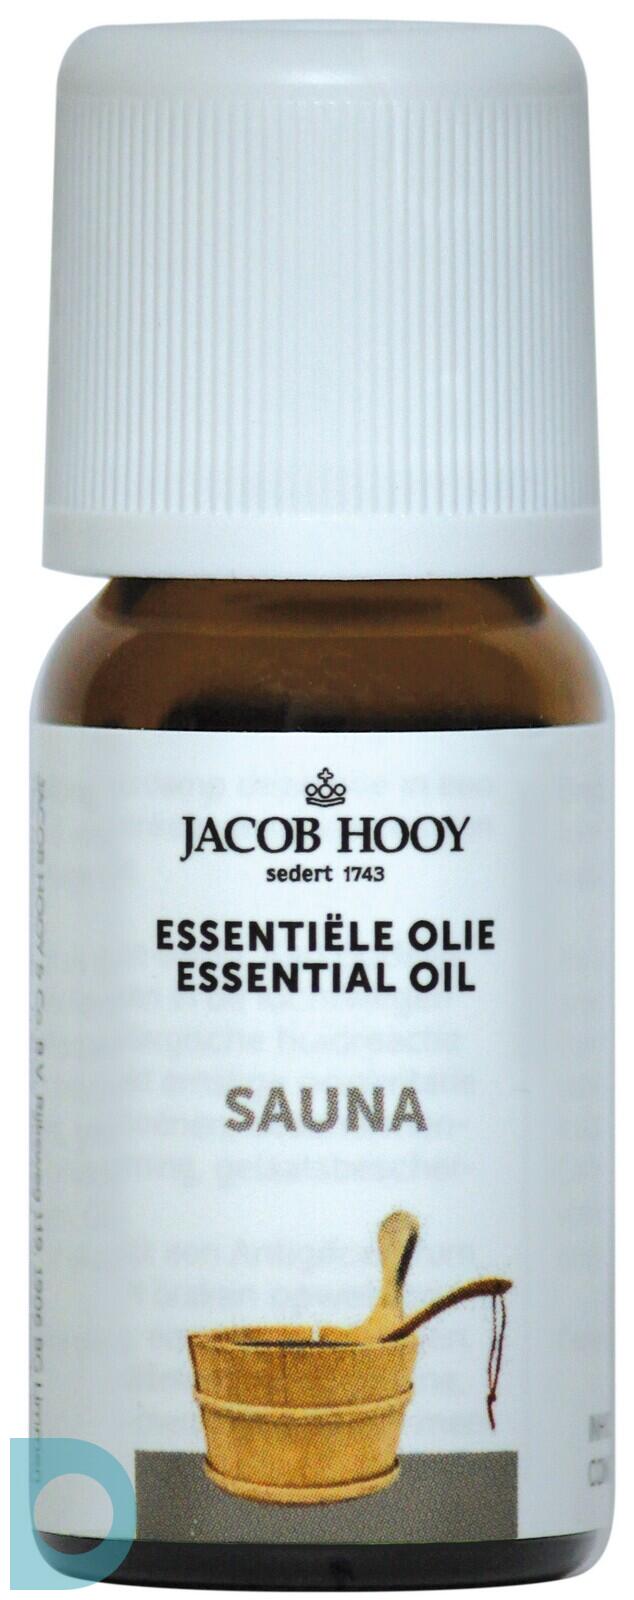 Steken heb vertrouwen Wat leuk Jacob Hooy Essentiële Olie Sauna 10ml | De Online Drogist